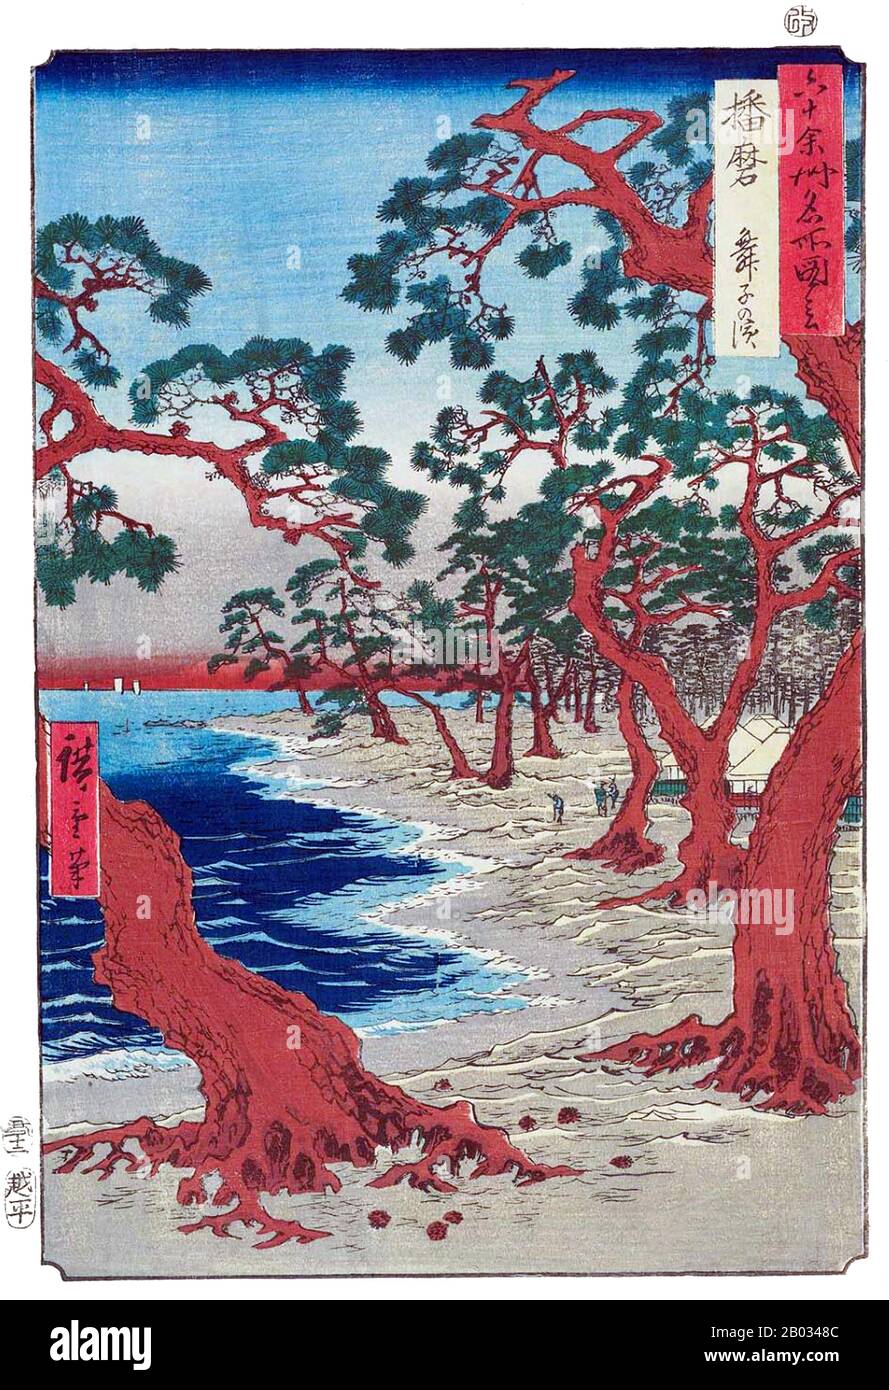 Utagawa Hiroshige (1797 – 12 octobre 1858) était un artiste ukiyo-e japonais et l'un des derniers grands artistes de cette tradition. Il a également été appelé Andō Hiroshige, et par le nom artistique d'Ichiyusai Hiroshige. Parmi de nombreux chefs-d'œuvre, Hiroshige est particulièrement rappelé pour 'Les soixante-neuf stations du Kisokaido' (1834–1842) et 'trente-six Vues Sur le Mont Fuji' (1852–1858). La « plage de Kaiko » d'Hiroshige est généralement créditée d'avoir aidé à inspirer « l'verger olive » de Vincent Van Gogh (1889) Banque D'Images